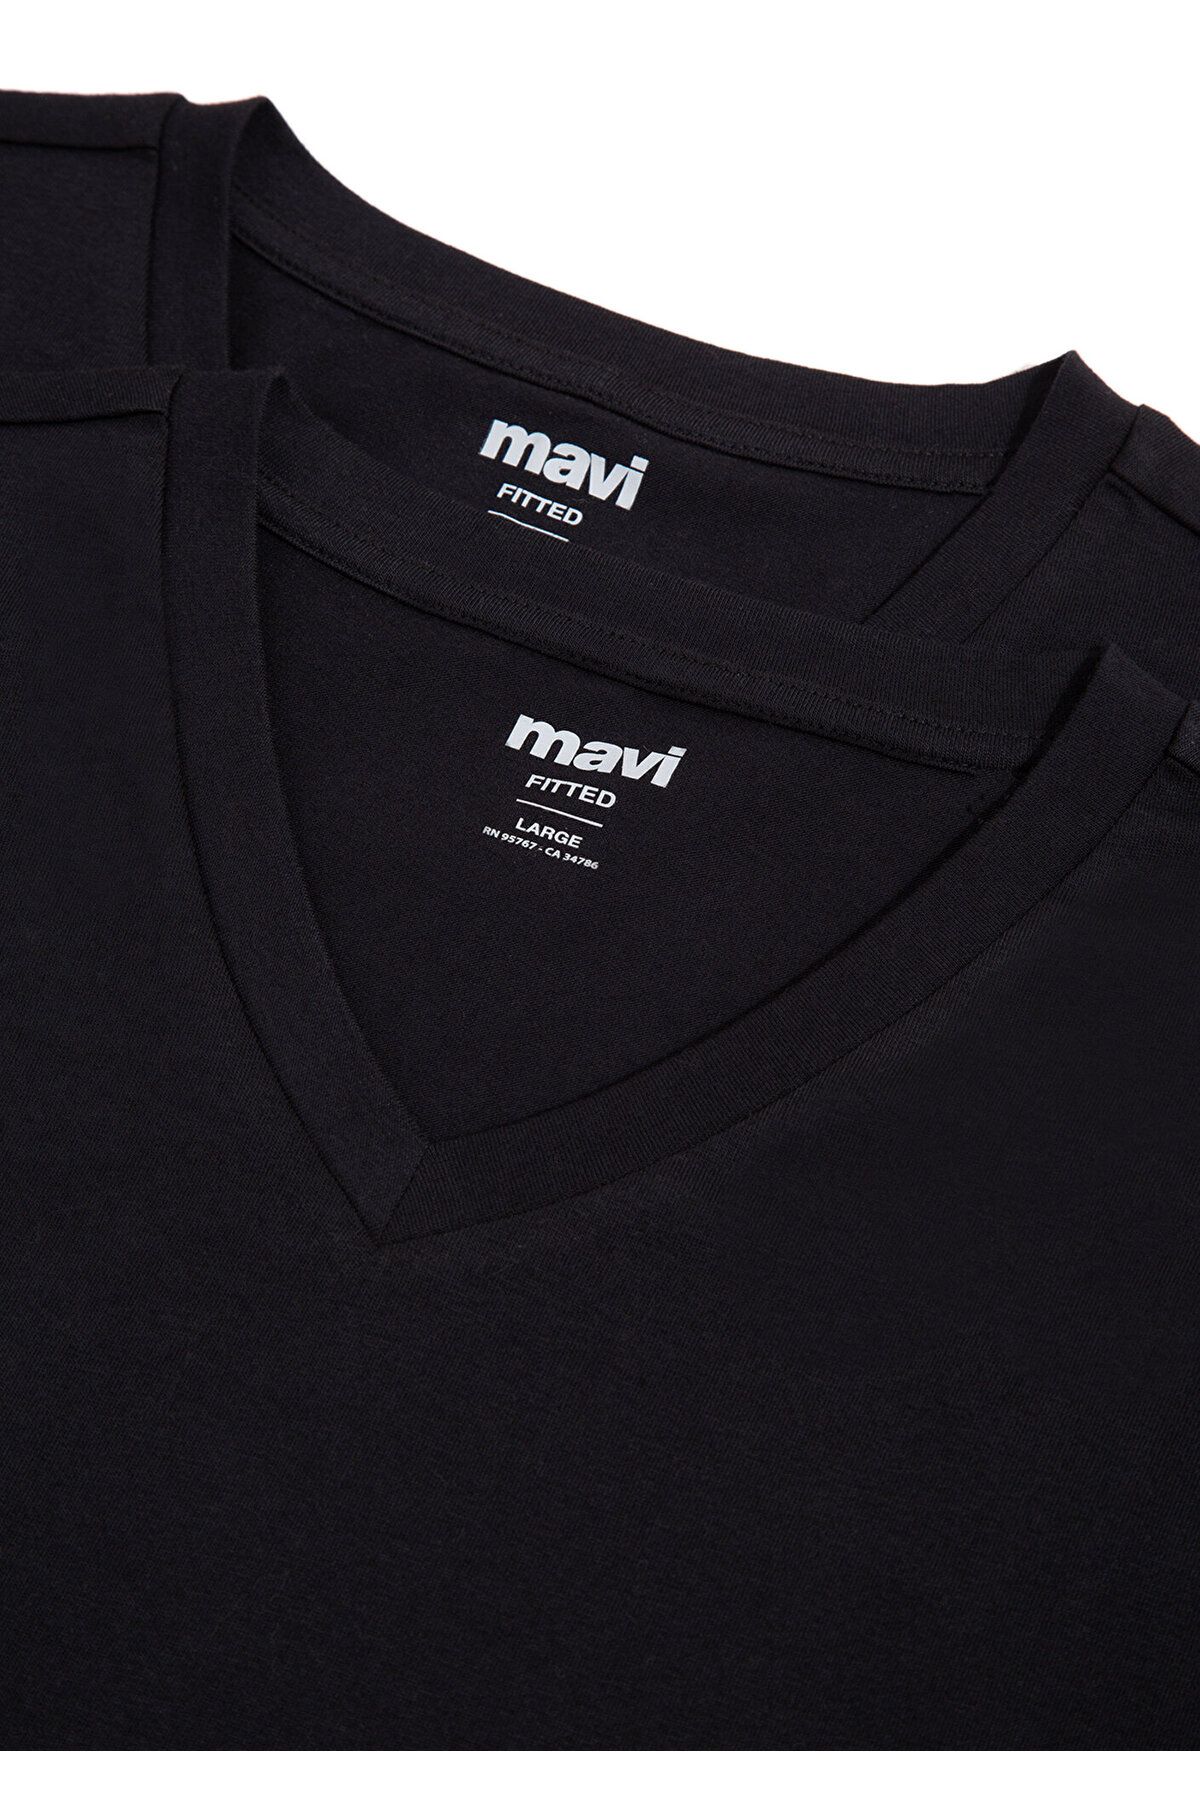 Mavi تی شرت اصلی مردان V Neck بر روی بدن 0611285-900 مجهز شده است